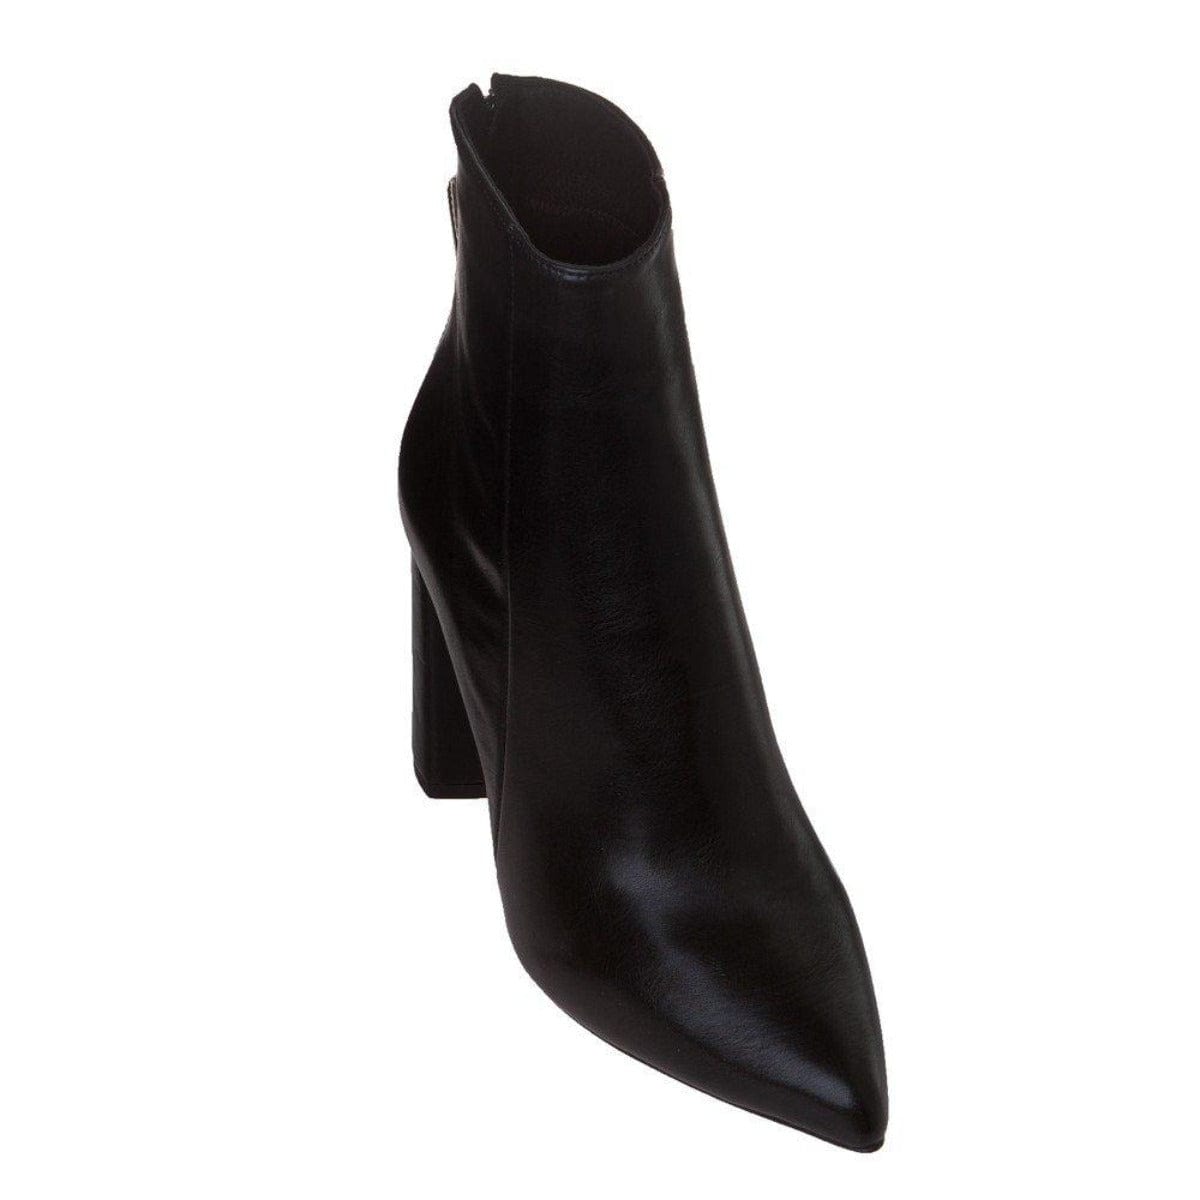 Μποτάκια αστραγάλου sante 19-592 μαύρα-La Scarpa Shoes Μποτάκια αστραγάλου sante 19-592 μαύρα SMALL BOOTS SANTE